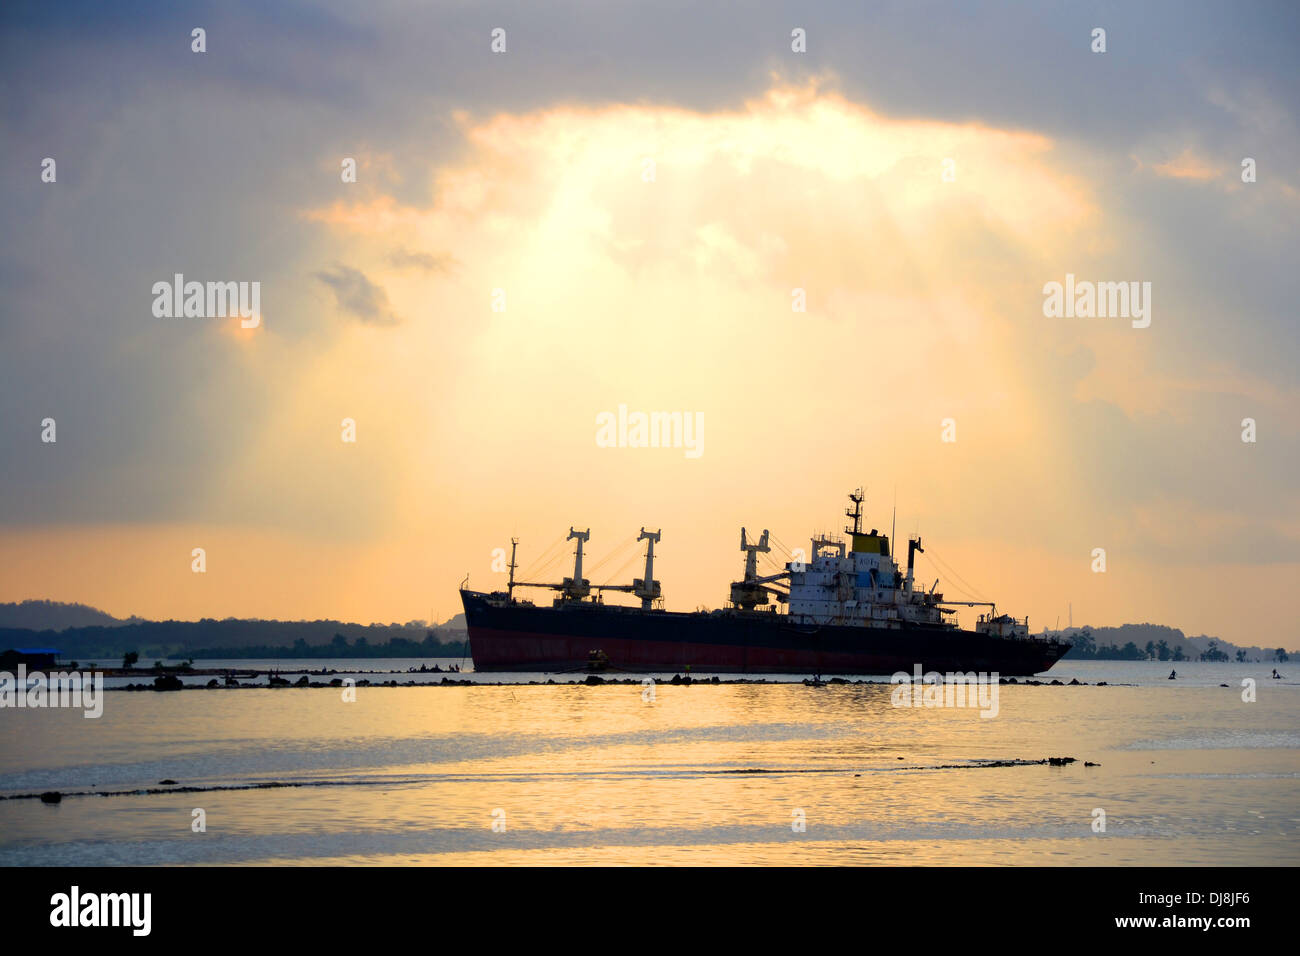 Ship at sunset dusk Stock Photo